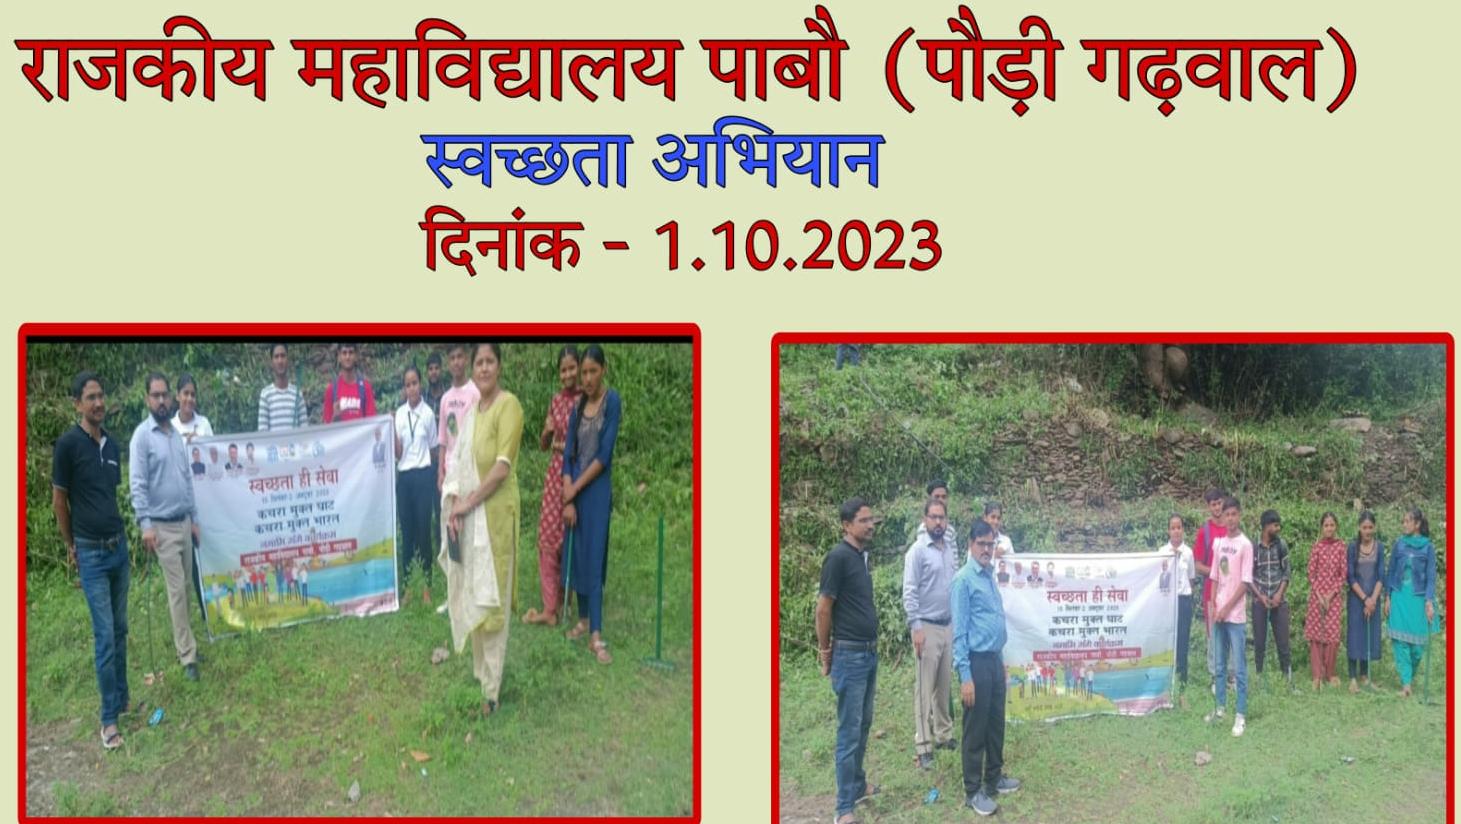 महाविद्यालय पाबौ में स्वच्छता कार्यक्रम का आयोजन